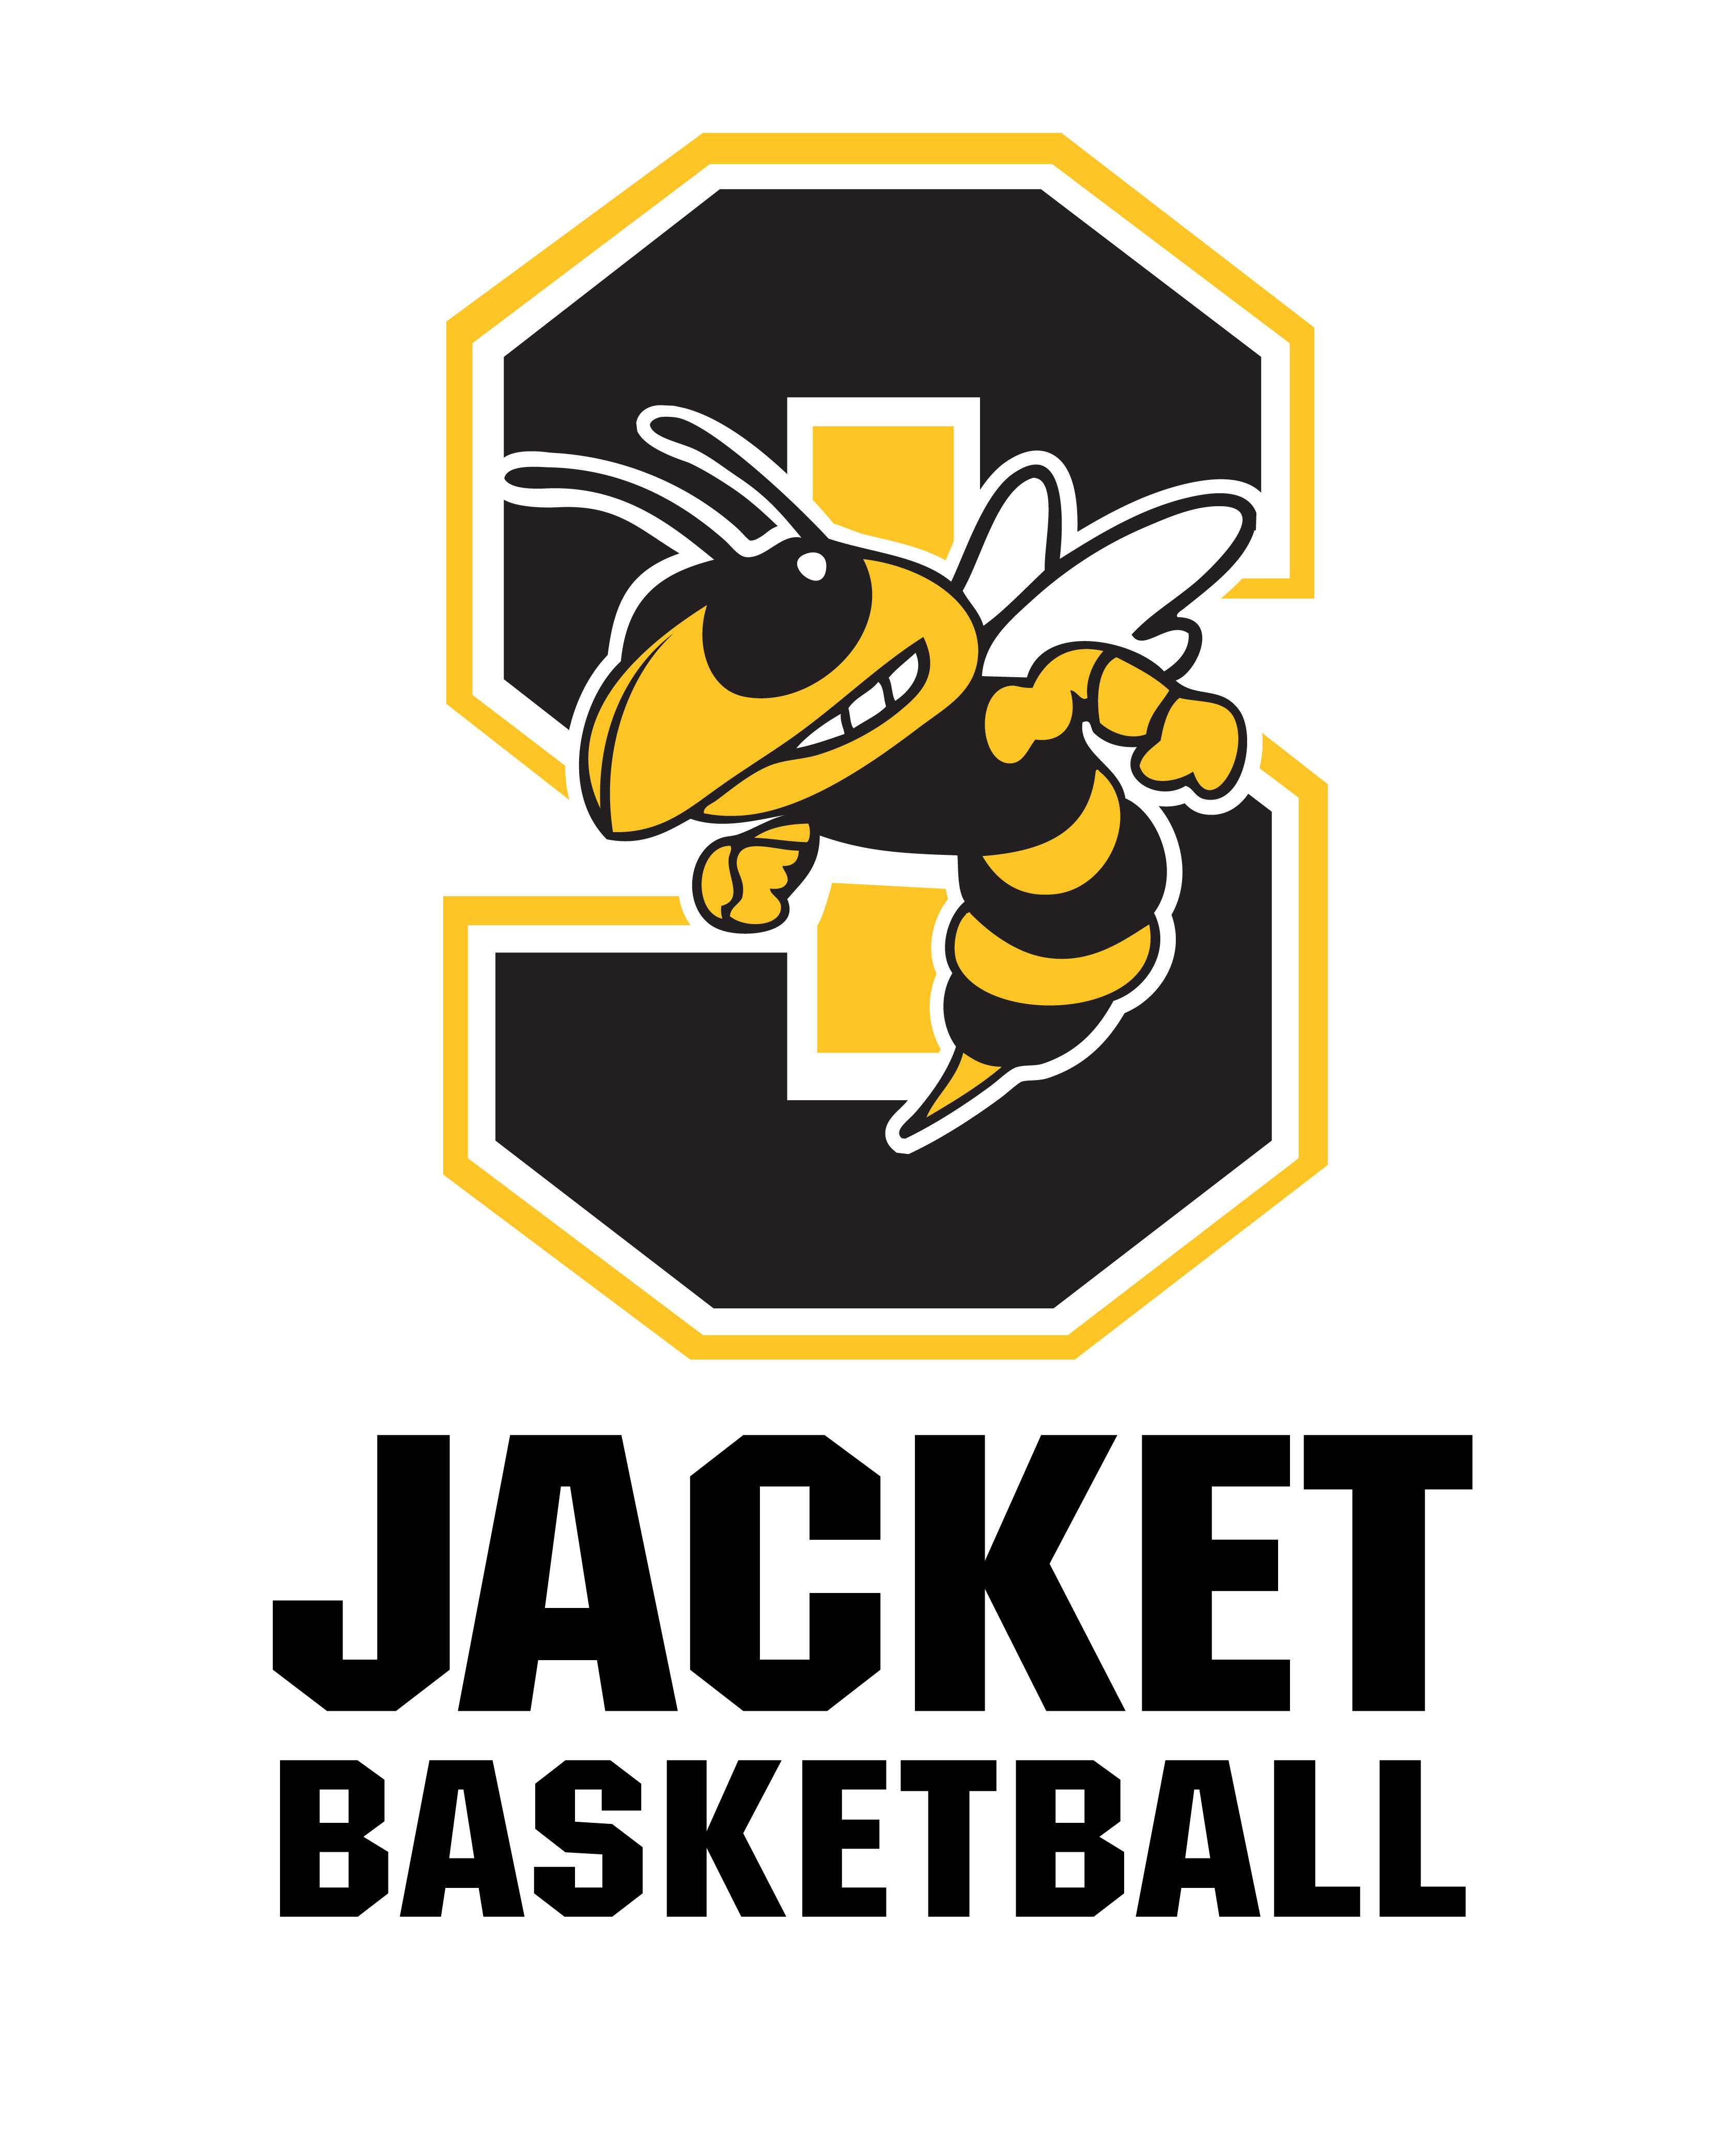 Jacket Basketball logo